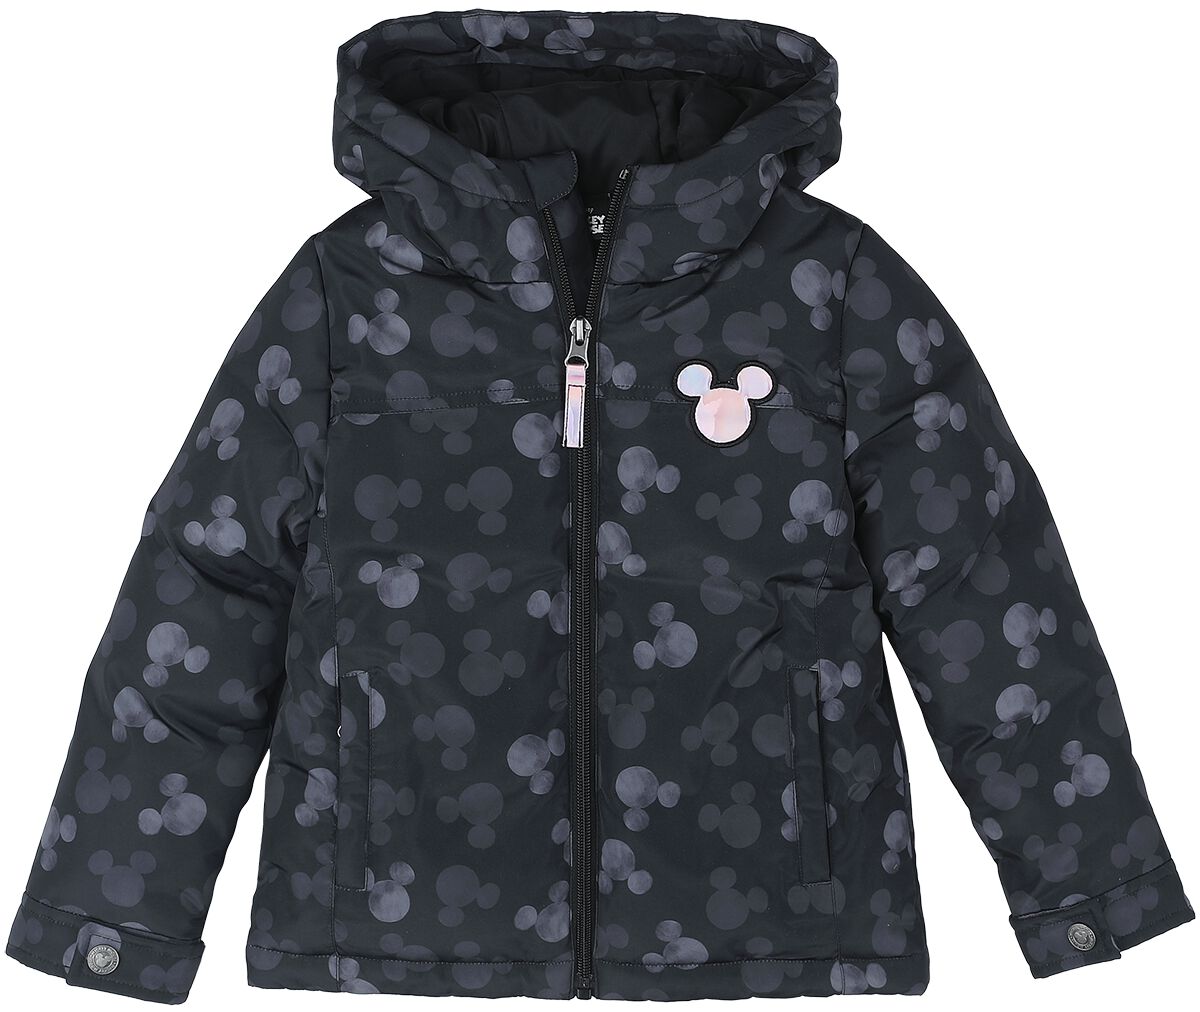 Micky Maus - Disney Jacke für Kinder - Allover - für Mädchen - schwarz  - EMP exklusives Merchandise! von Micky Maus